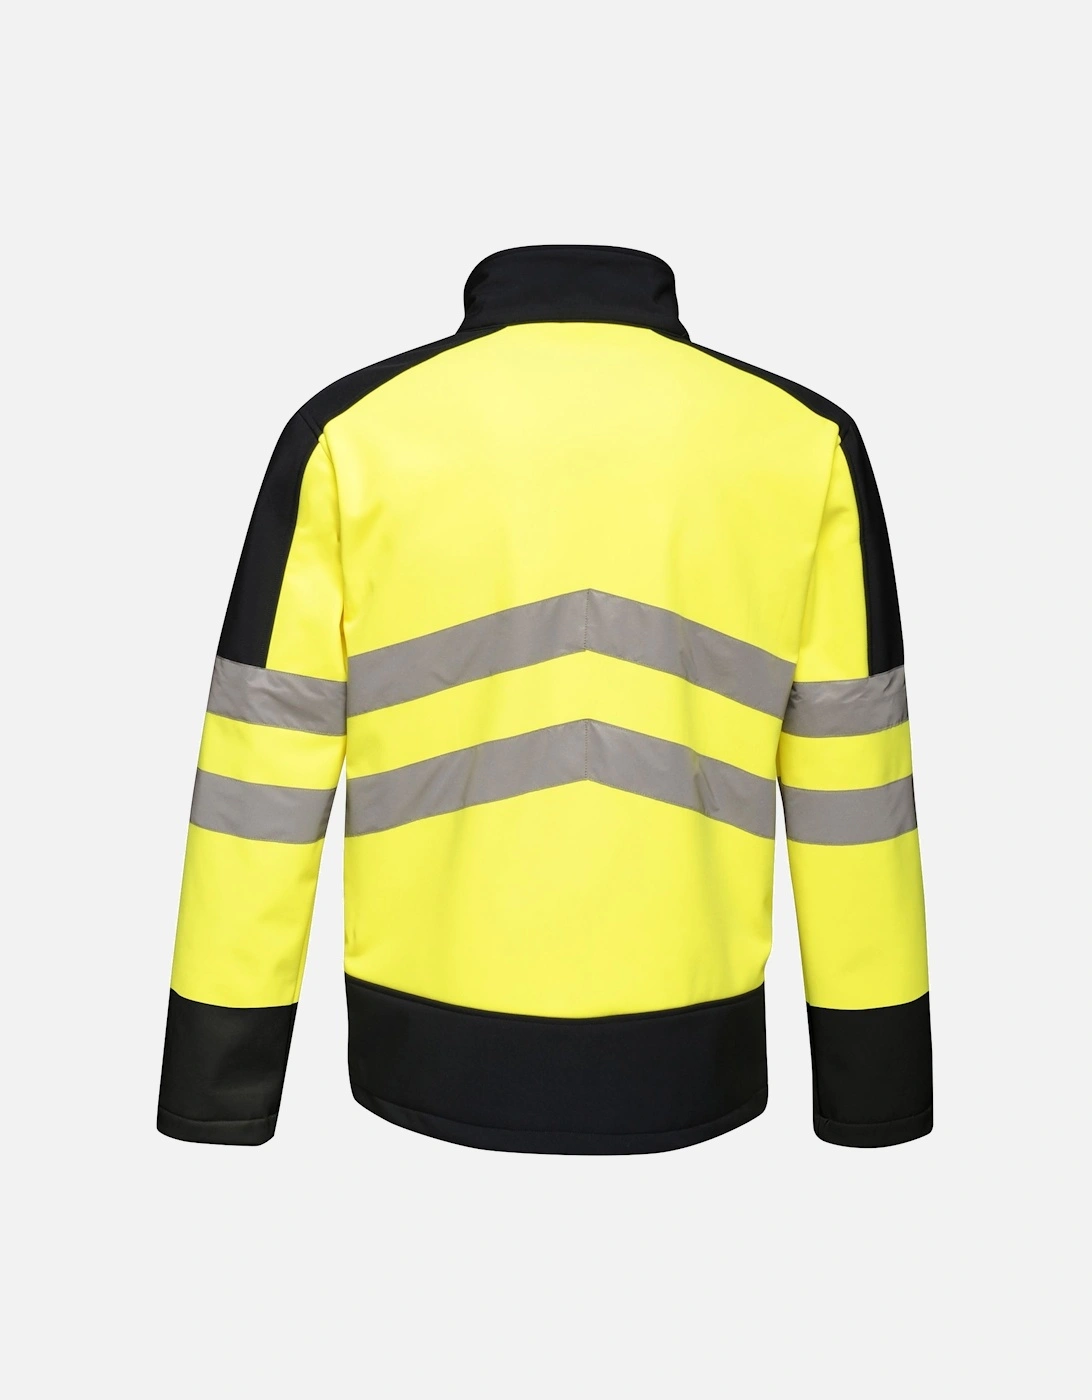 Unisex Hi Vis Pro Reflective Softshell Work Jacket